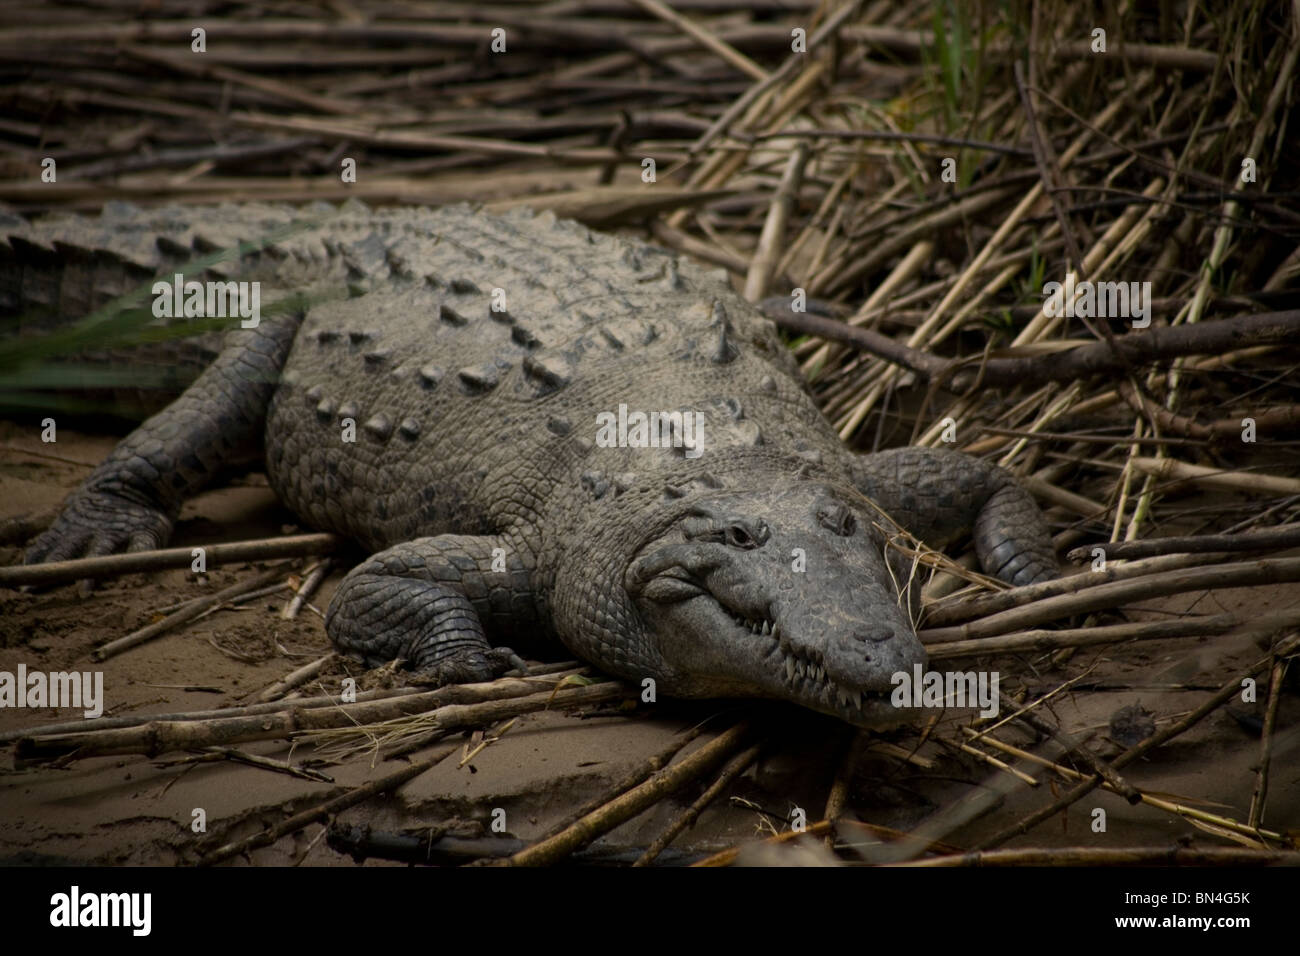 Un Crocodile se dresse sur la rive de la rivière Grijalva, CanyonTuxla Sumidero Gutierrez, Chiapas, Mexique Banque D'Images